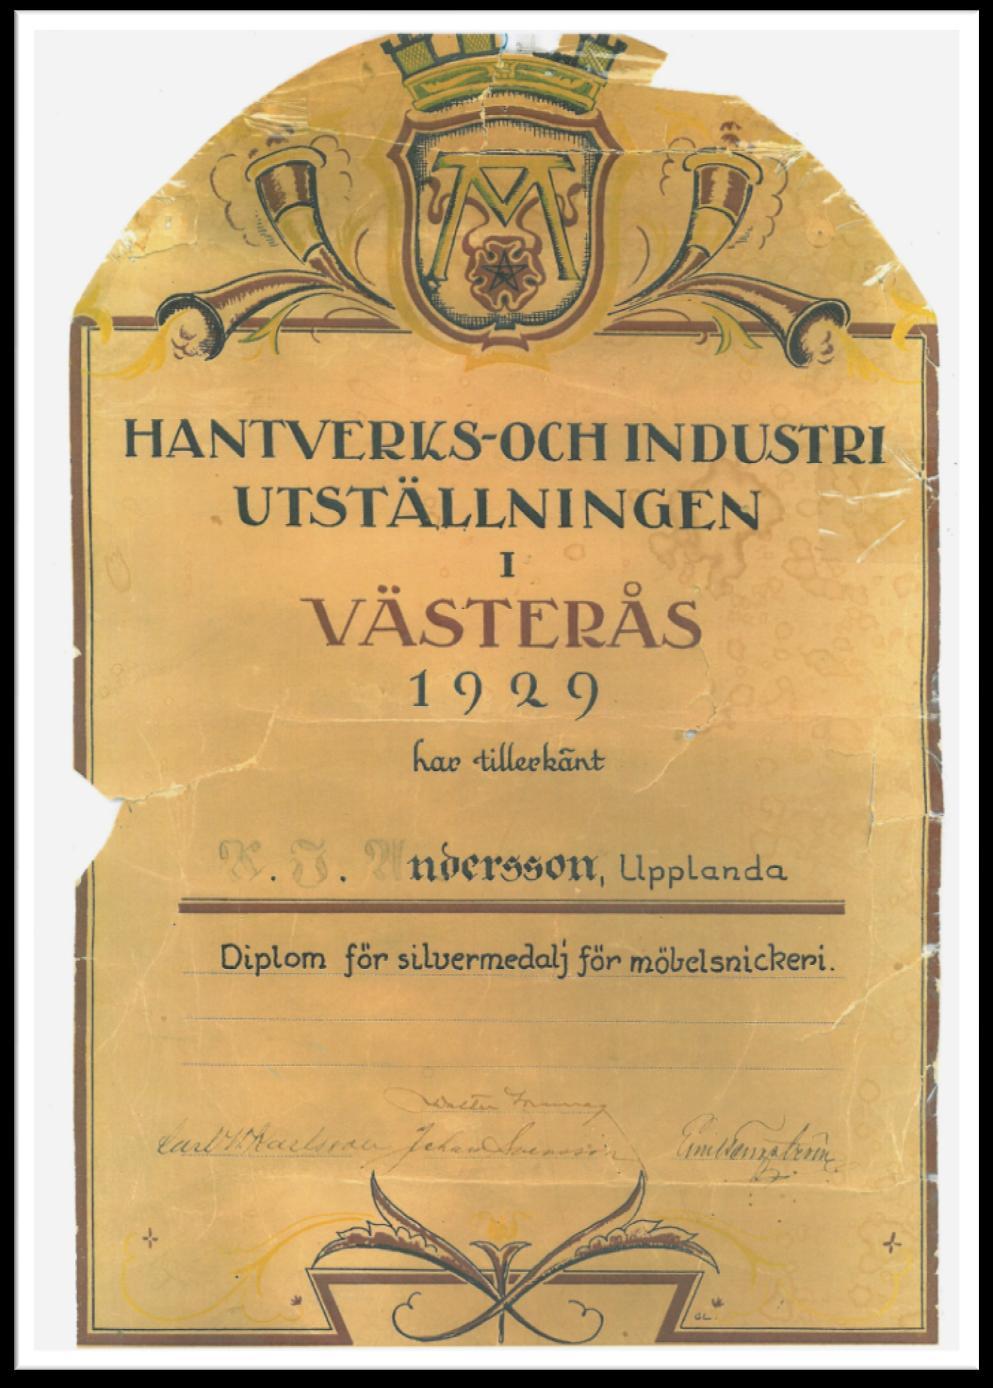 Karl-Johan var en utomordentligt skicklig möbelsnickare, tillika träbildhuggare och deltog i flertalet utställningar, bl.a. Hantverks- och Industriutställningen i Västerås år 1929, där han hedrades med diplom för silvermedalj för möbelsnickeri.